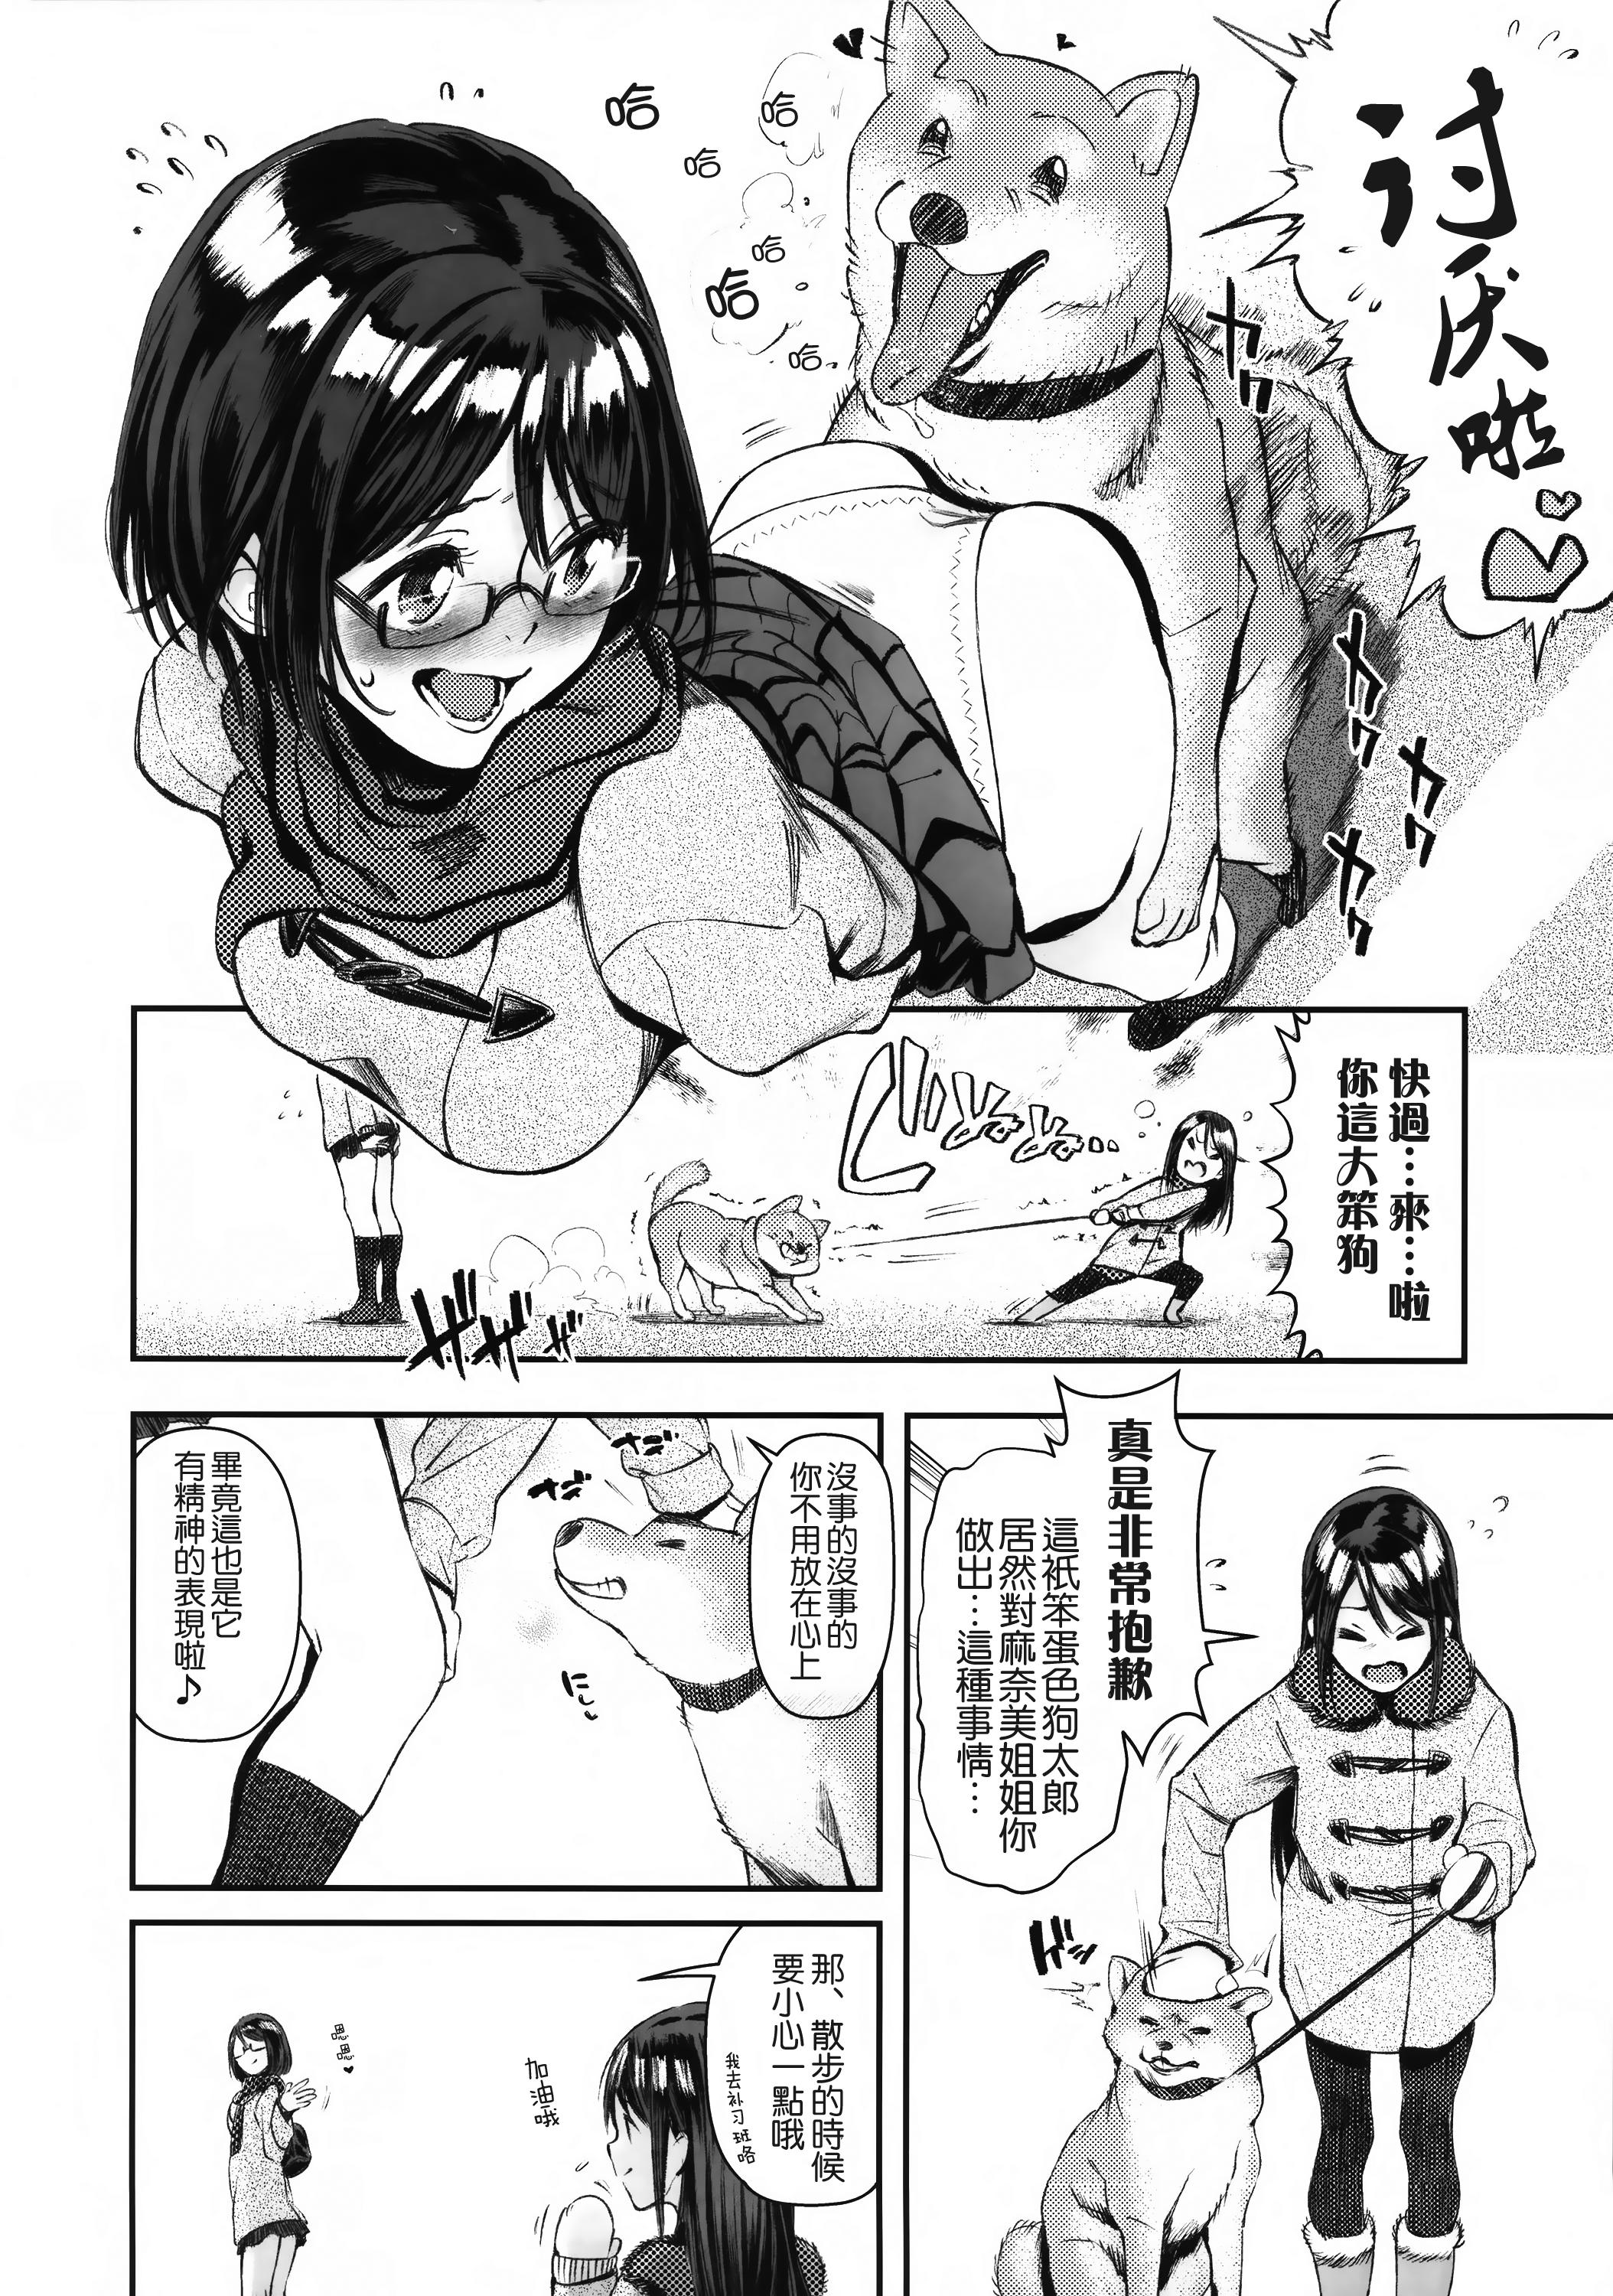 Leite Inu no Kimochi Ii Vol. 001 Story - Page 5